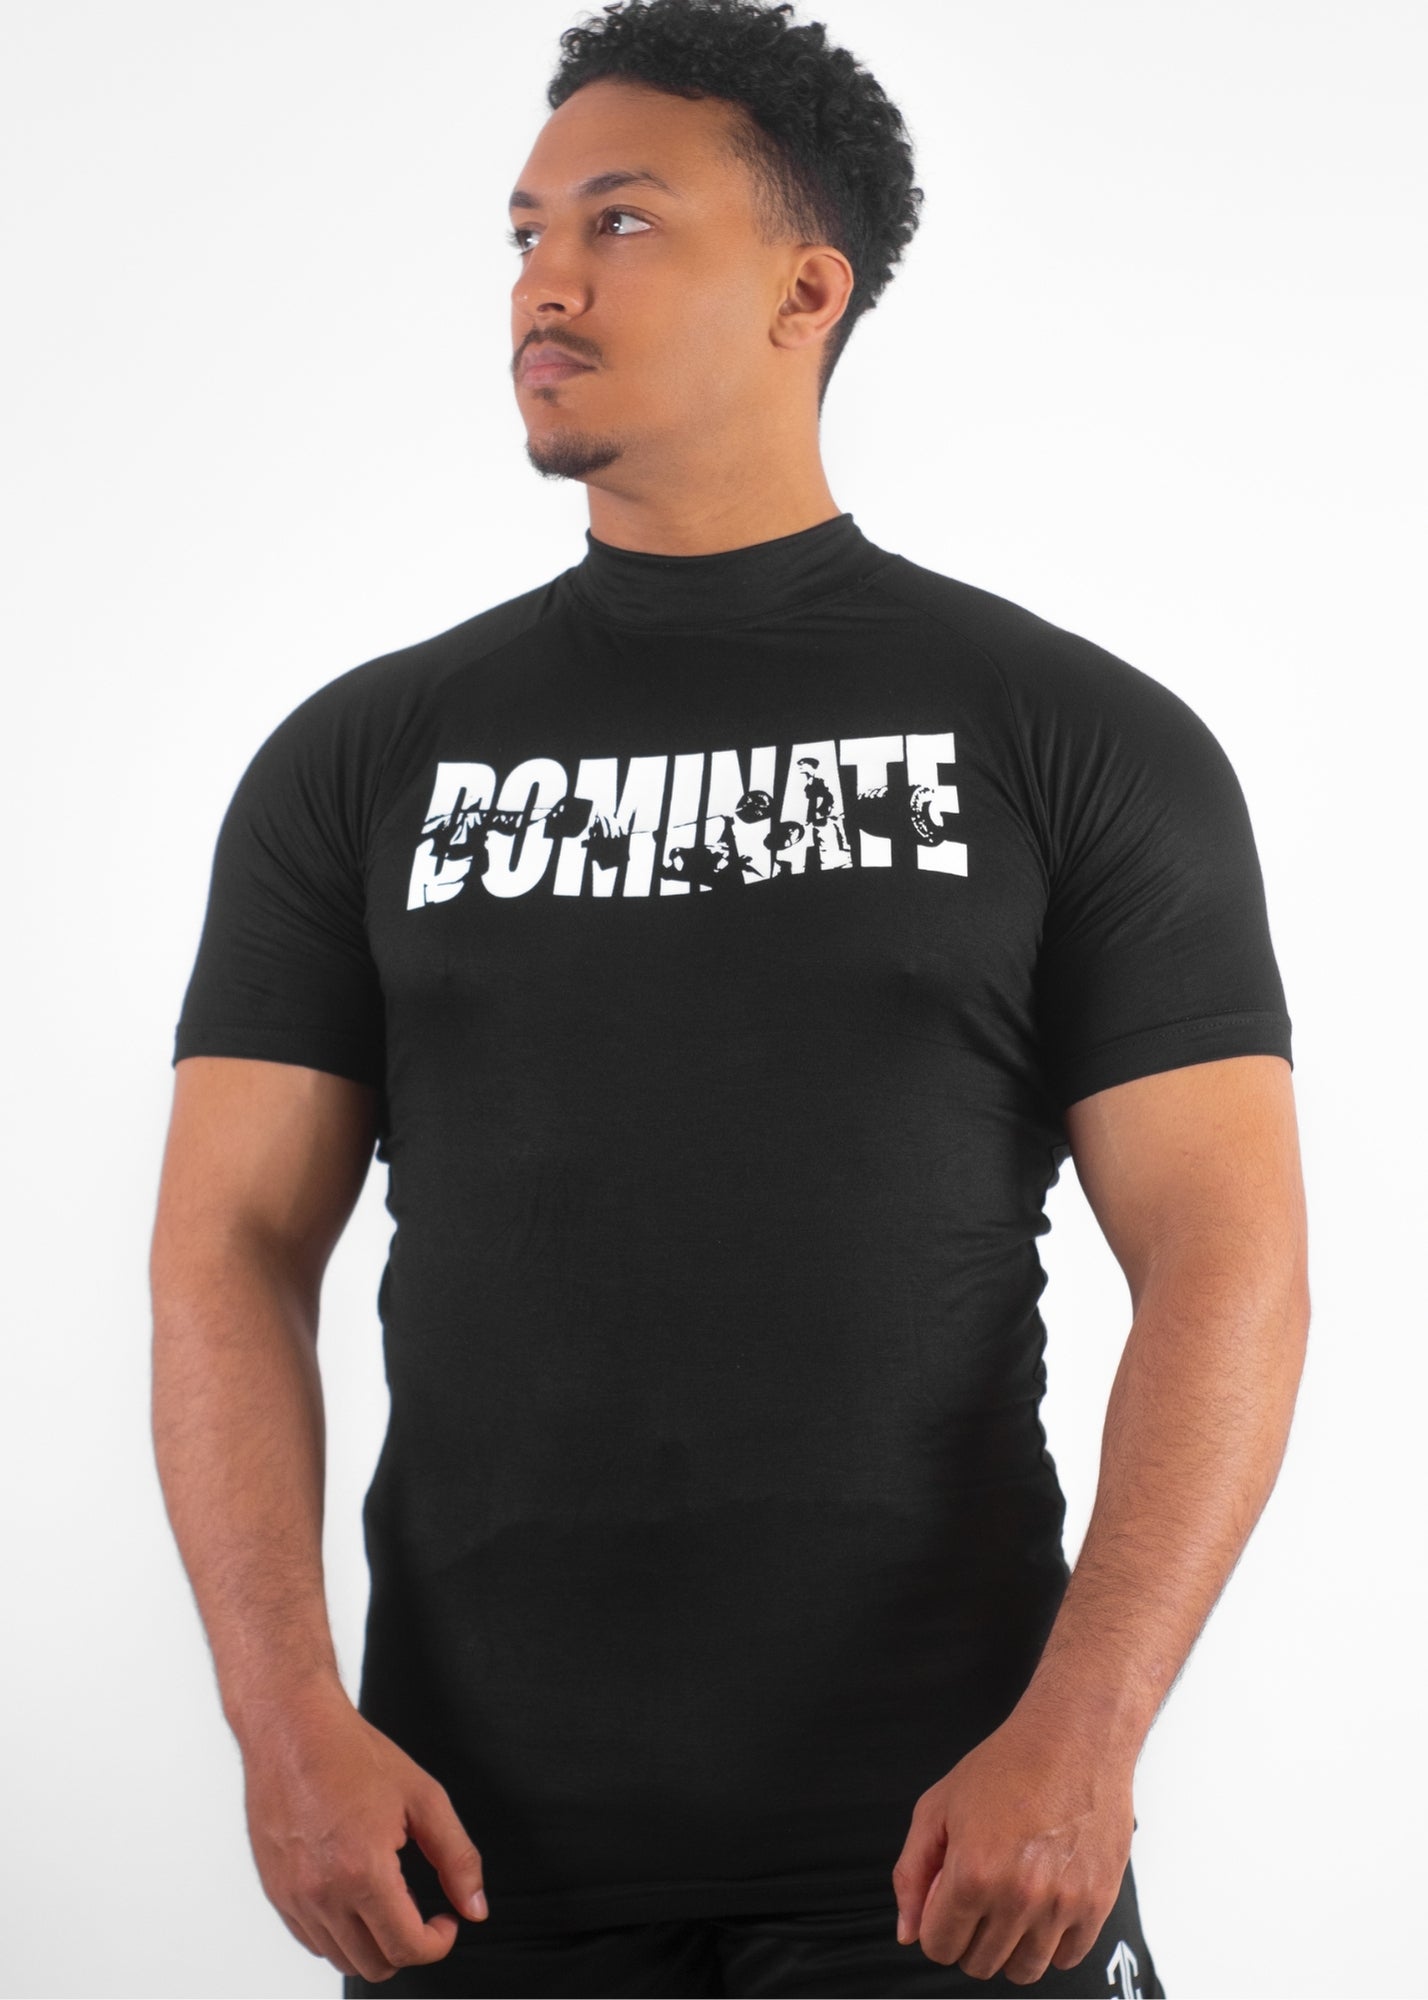 APEX™ 2 Compression T-Shirt " HUSTLER & DOMINATE"